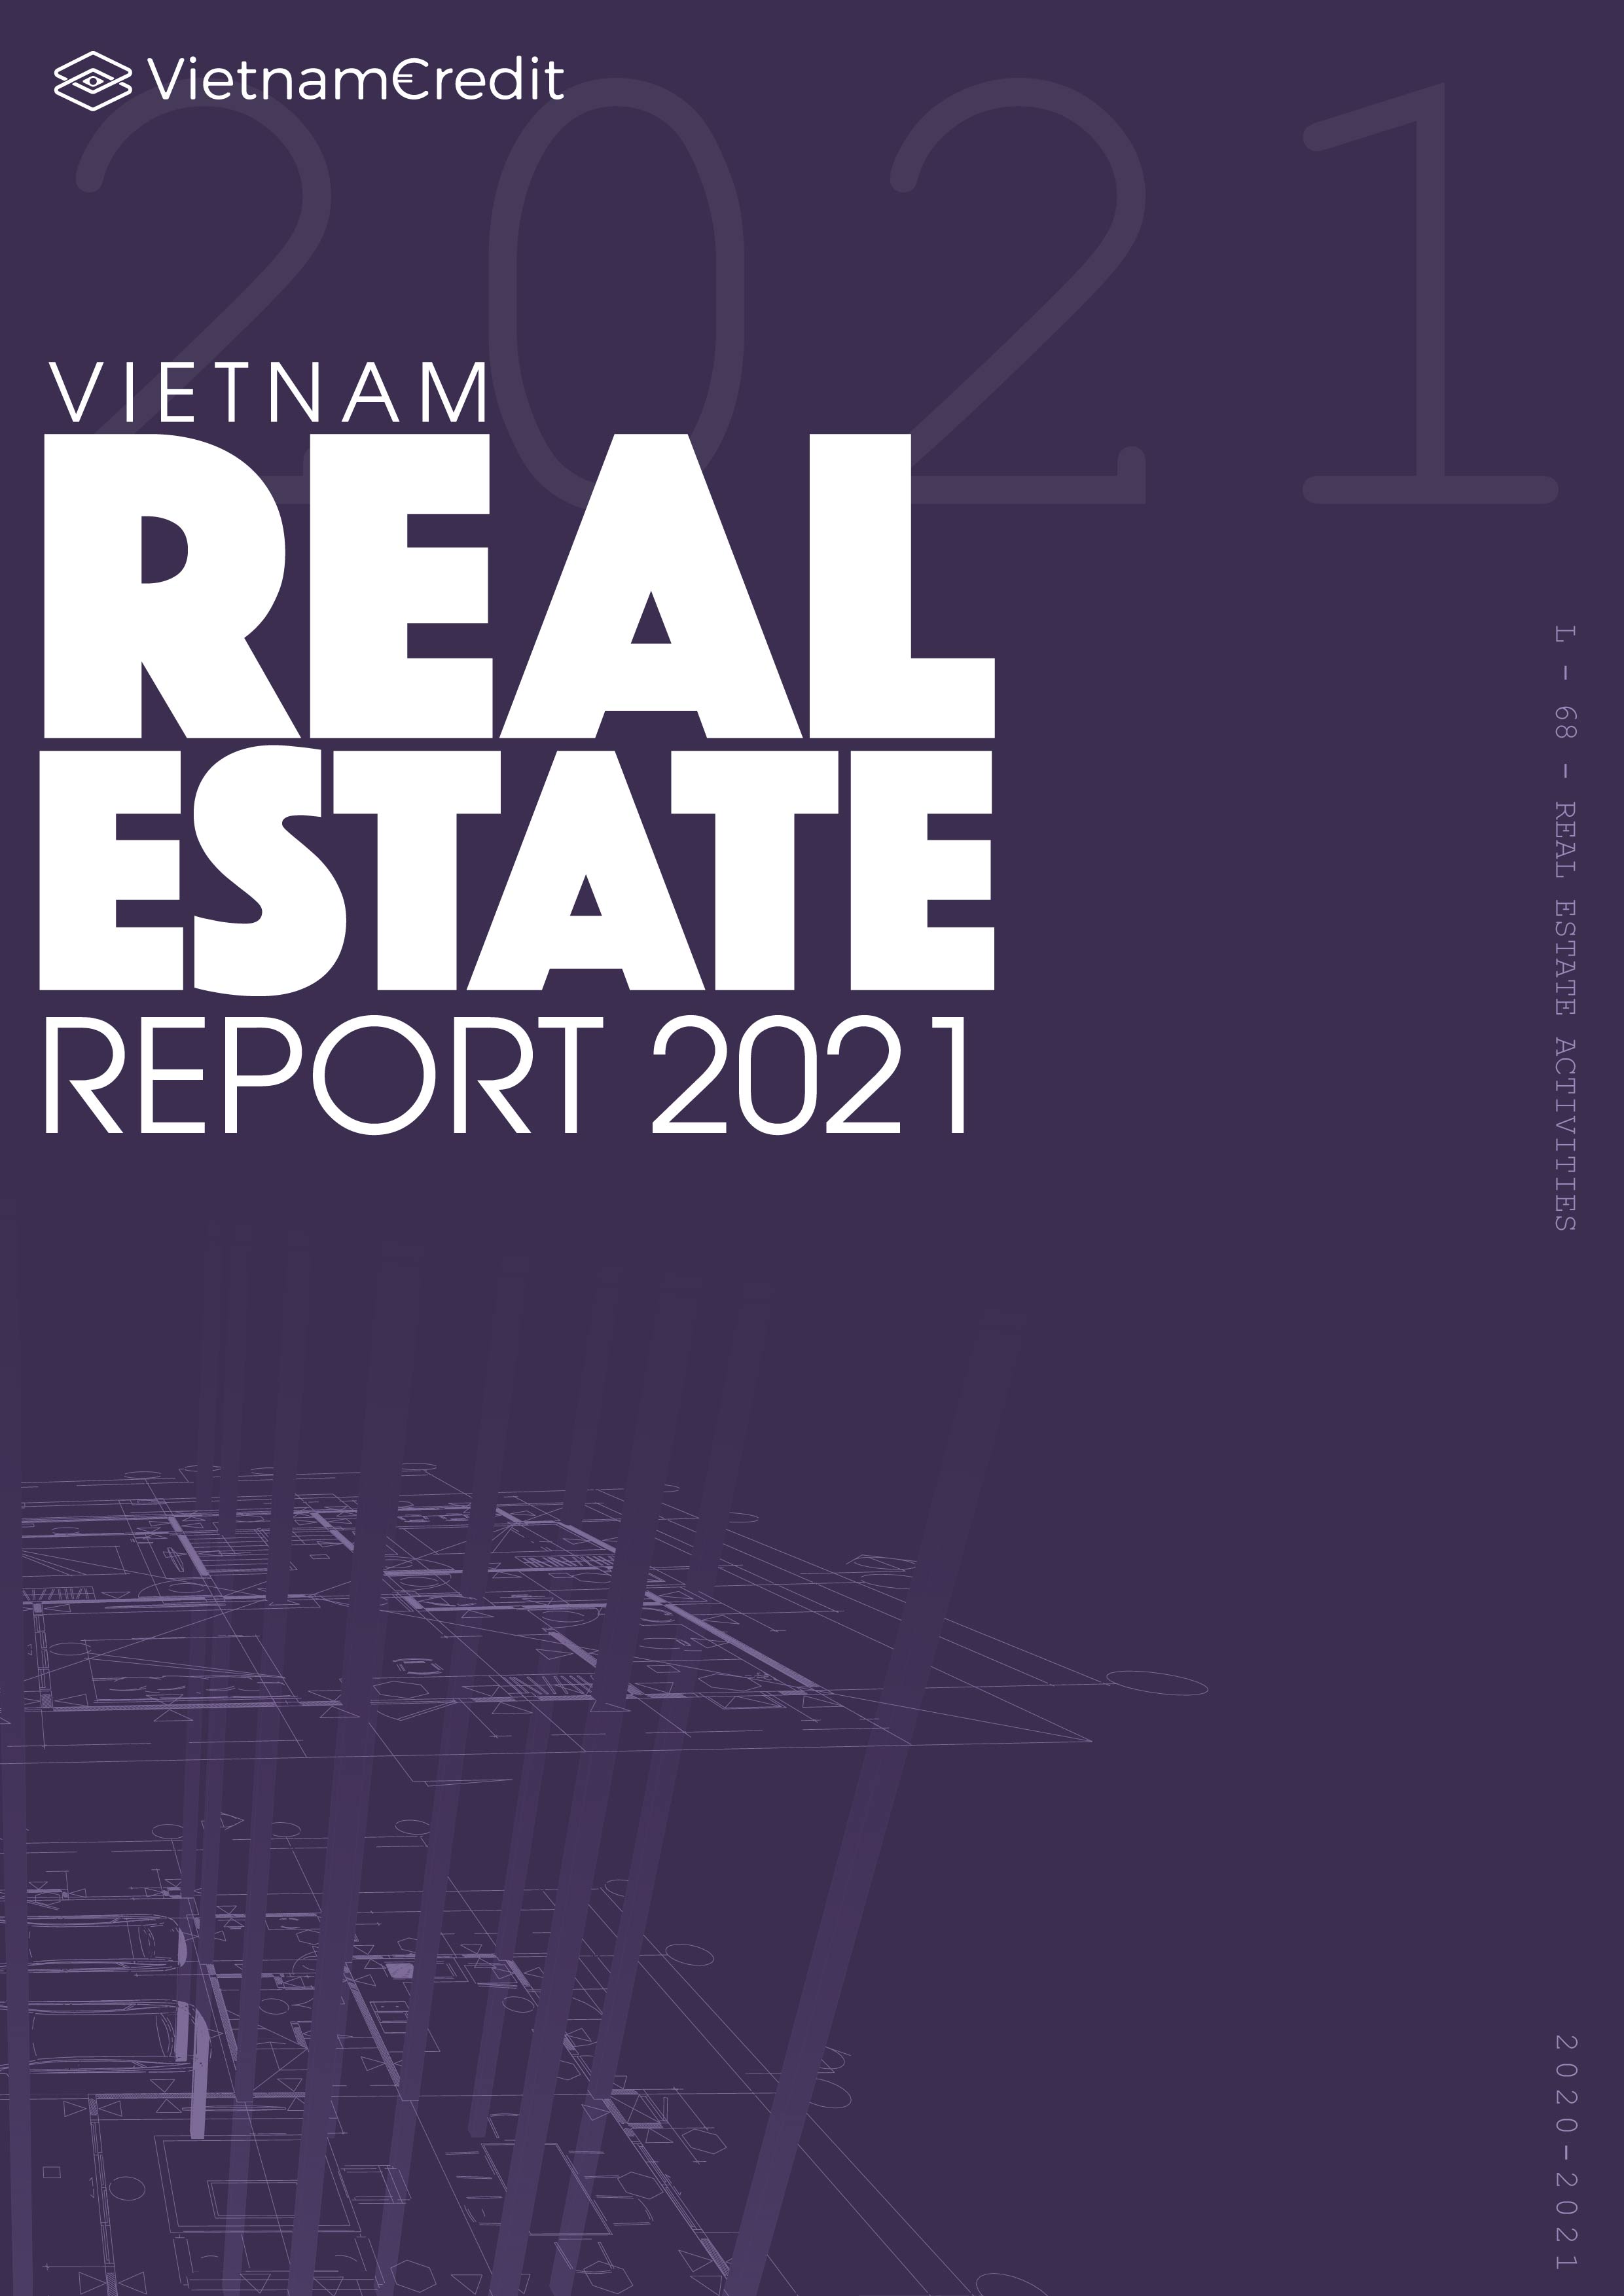 Vietnam Real Estate Industry Report 2021